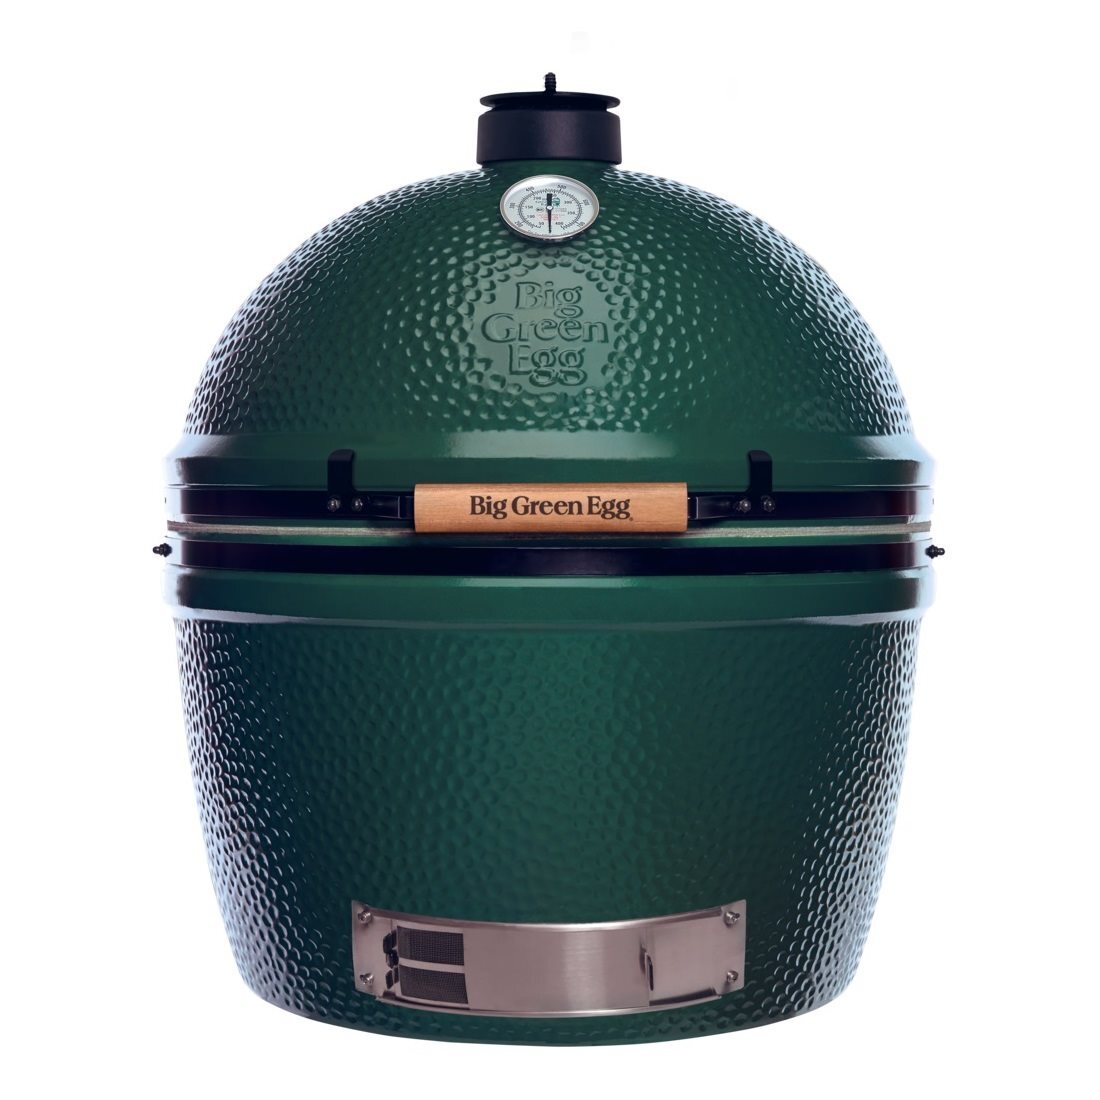 Big Green Egg 2XL houtskool barbecue / groen / rond